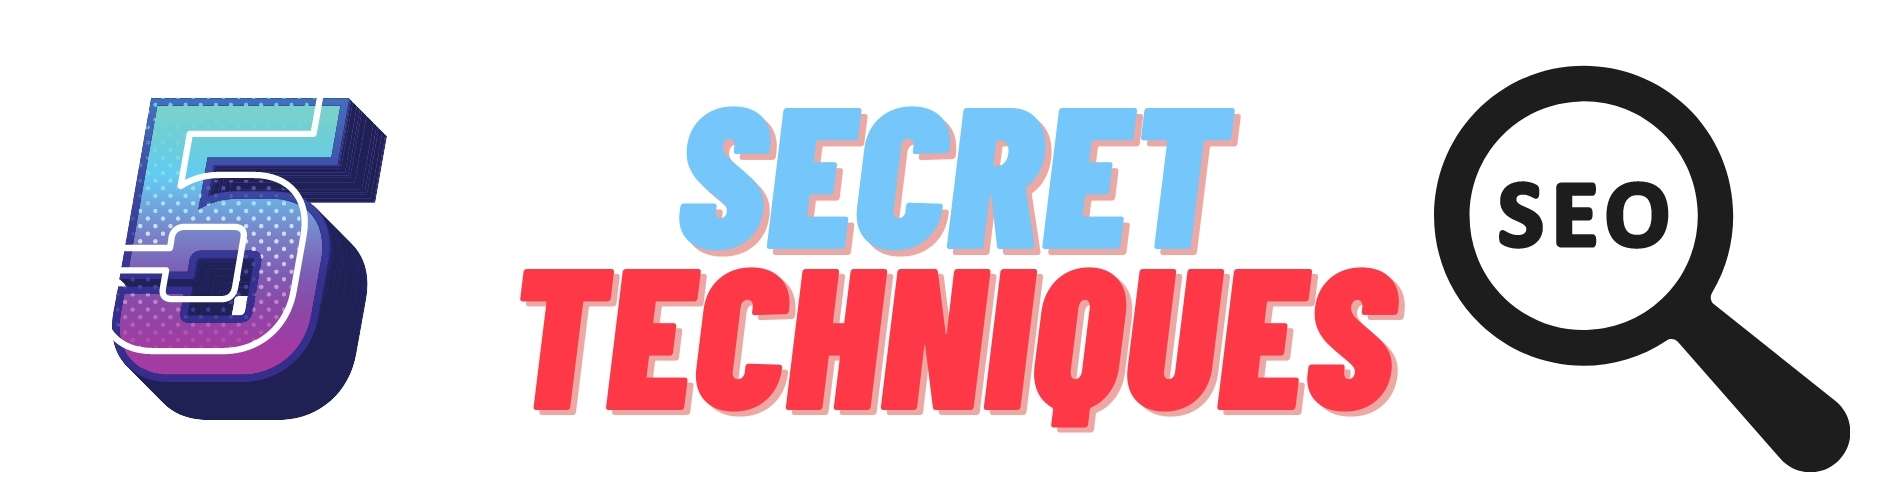 secret seo techniques